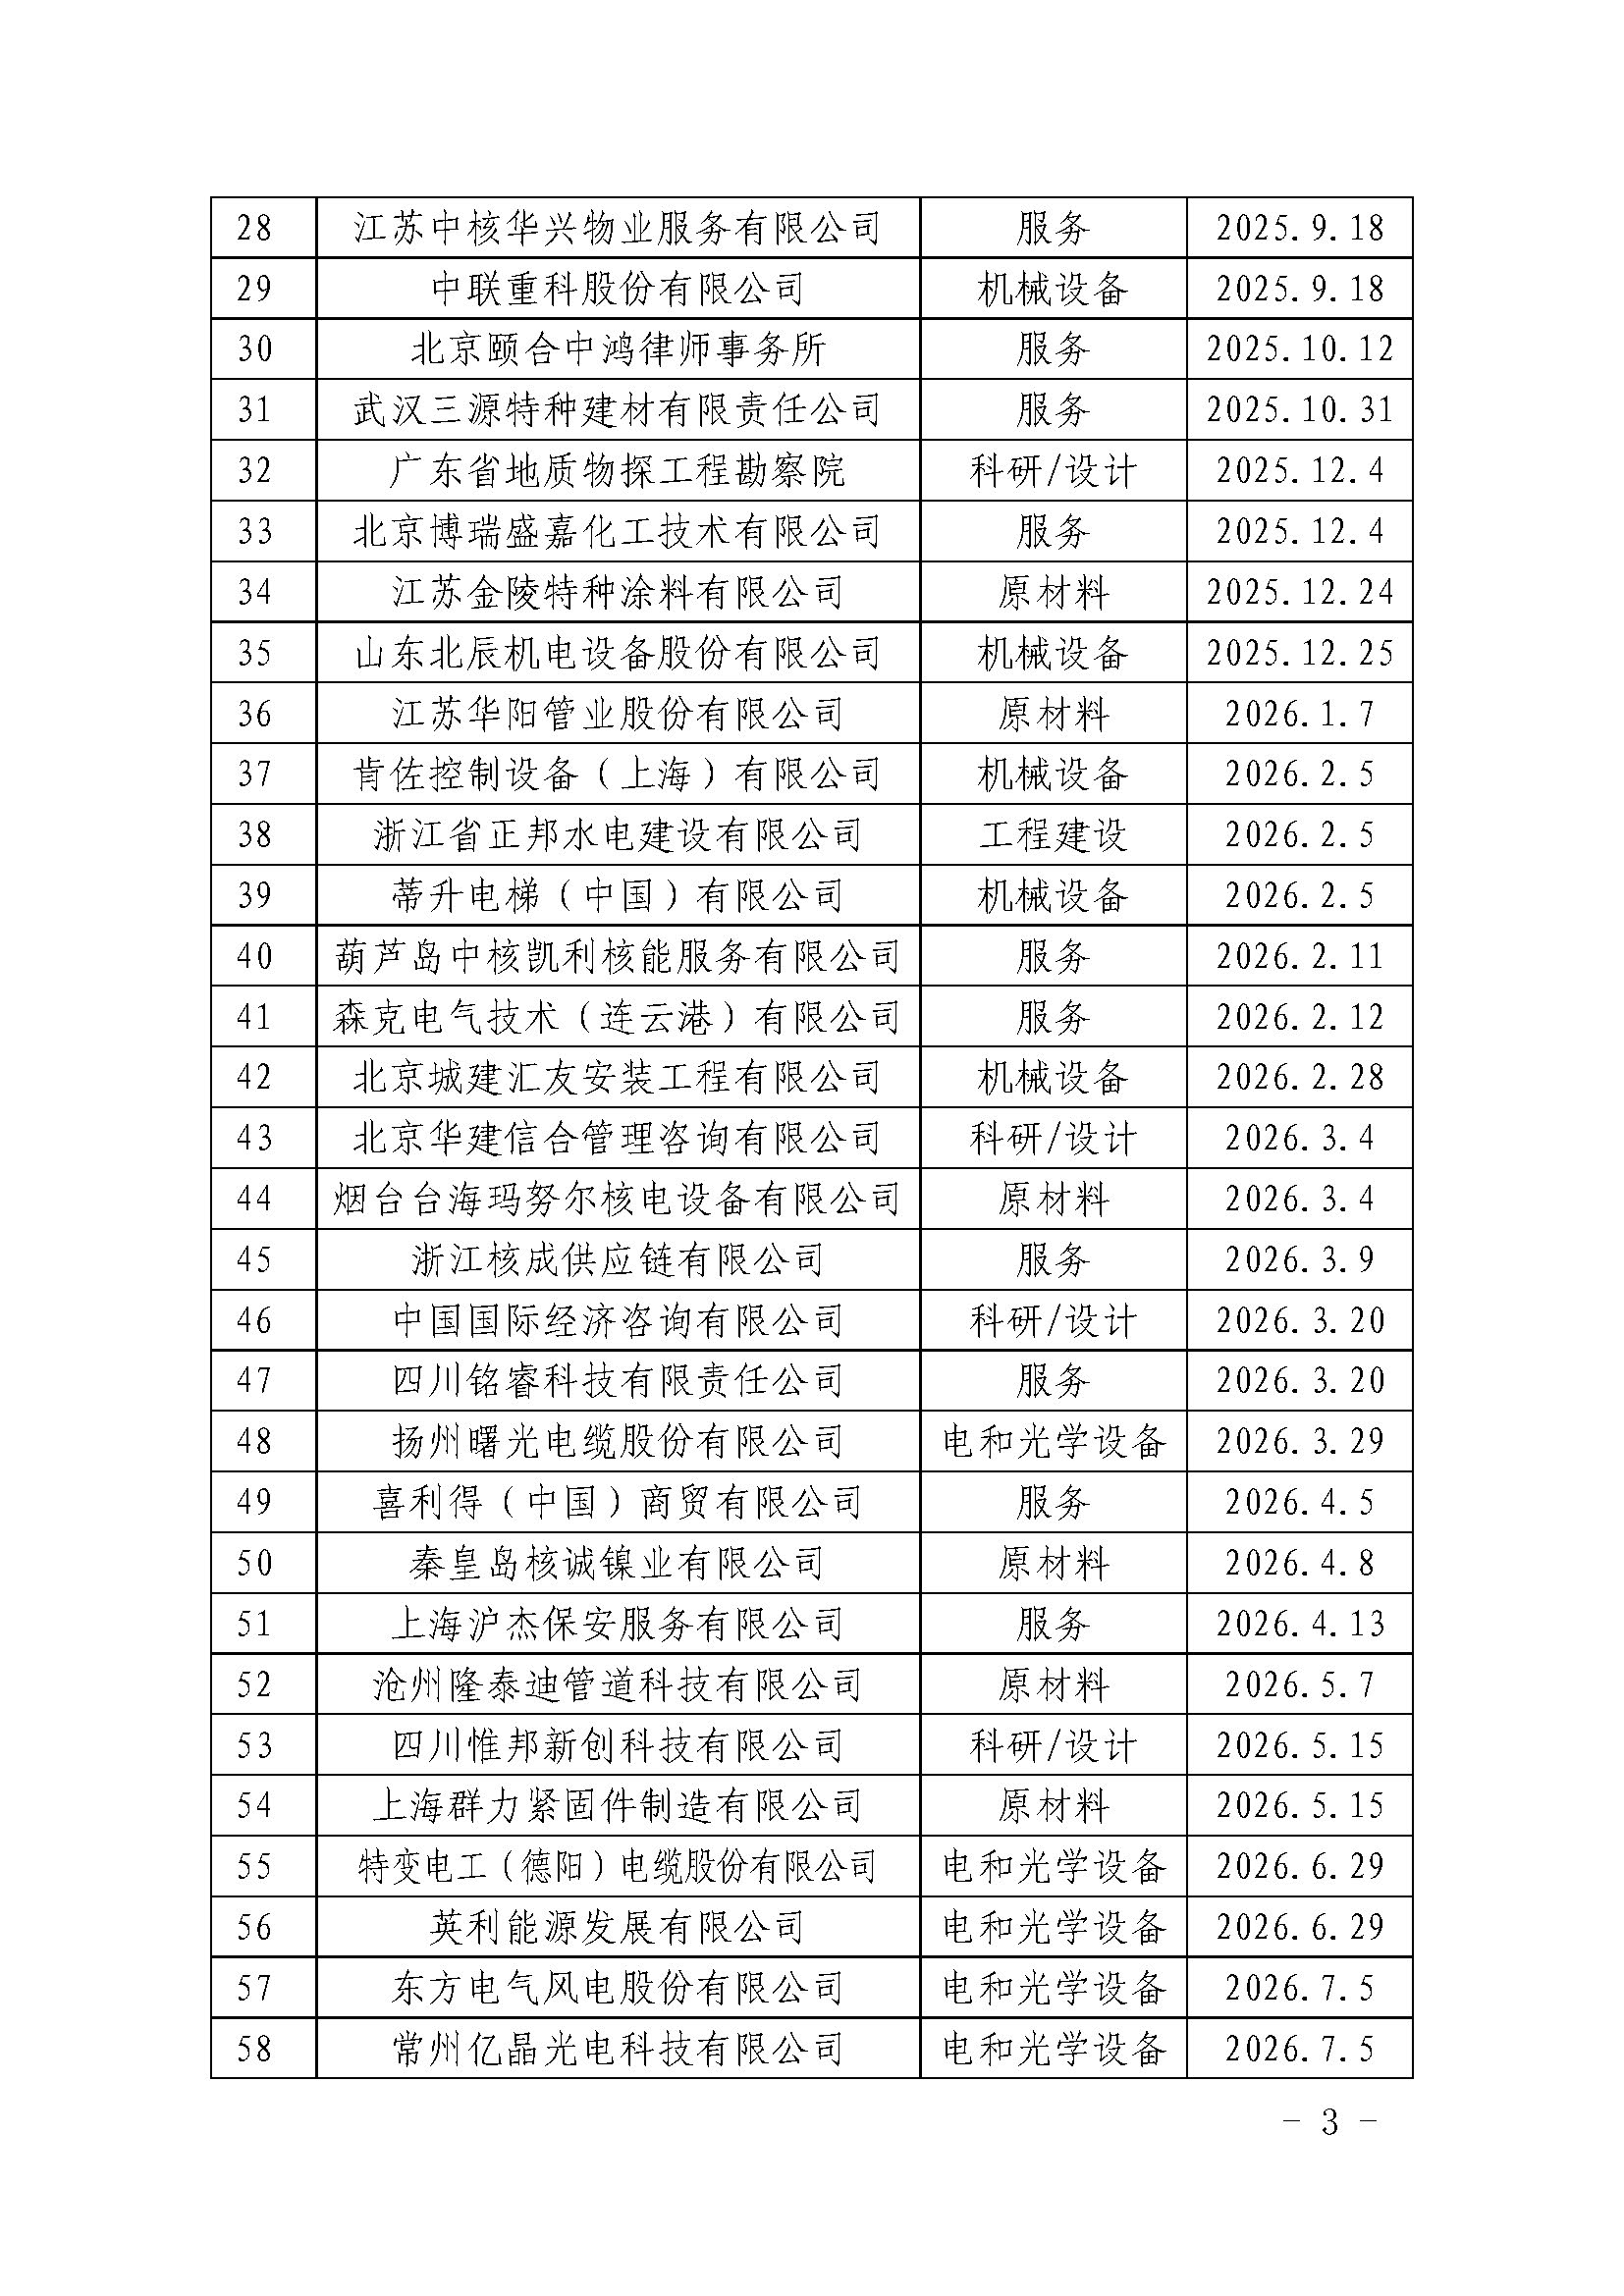 中国核能行业协会关于发布第二十九批核能行业合格供应商名录的公告_页面_3.jpg